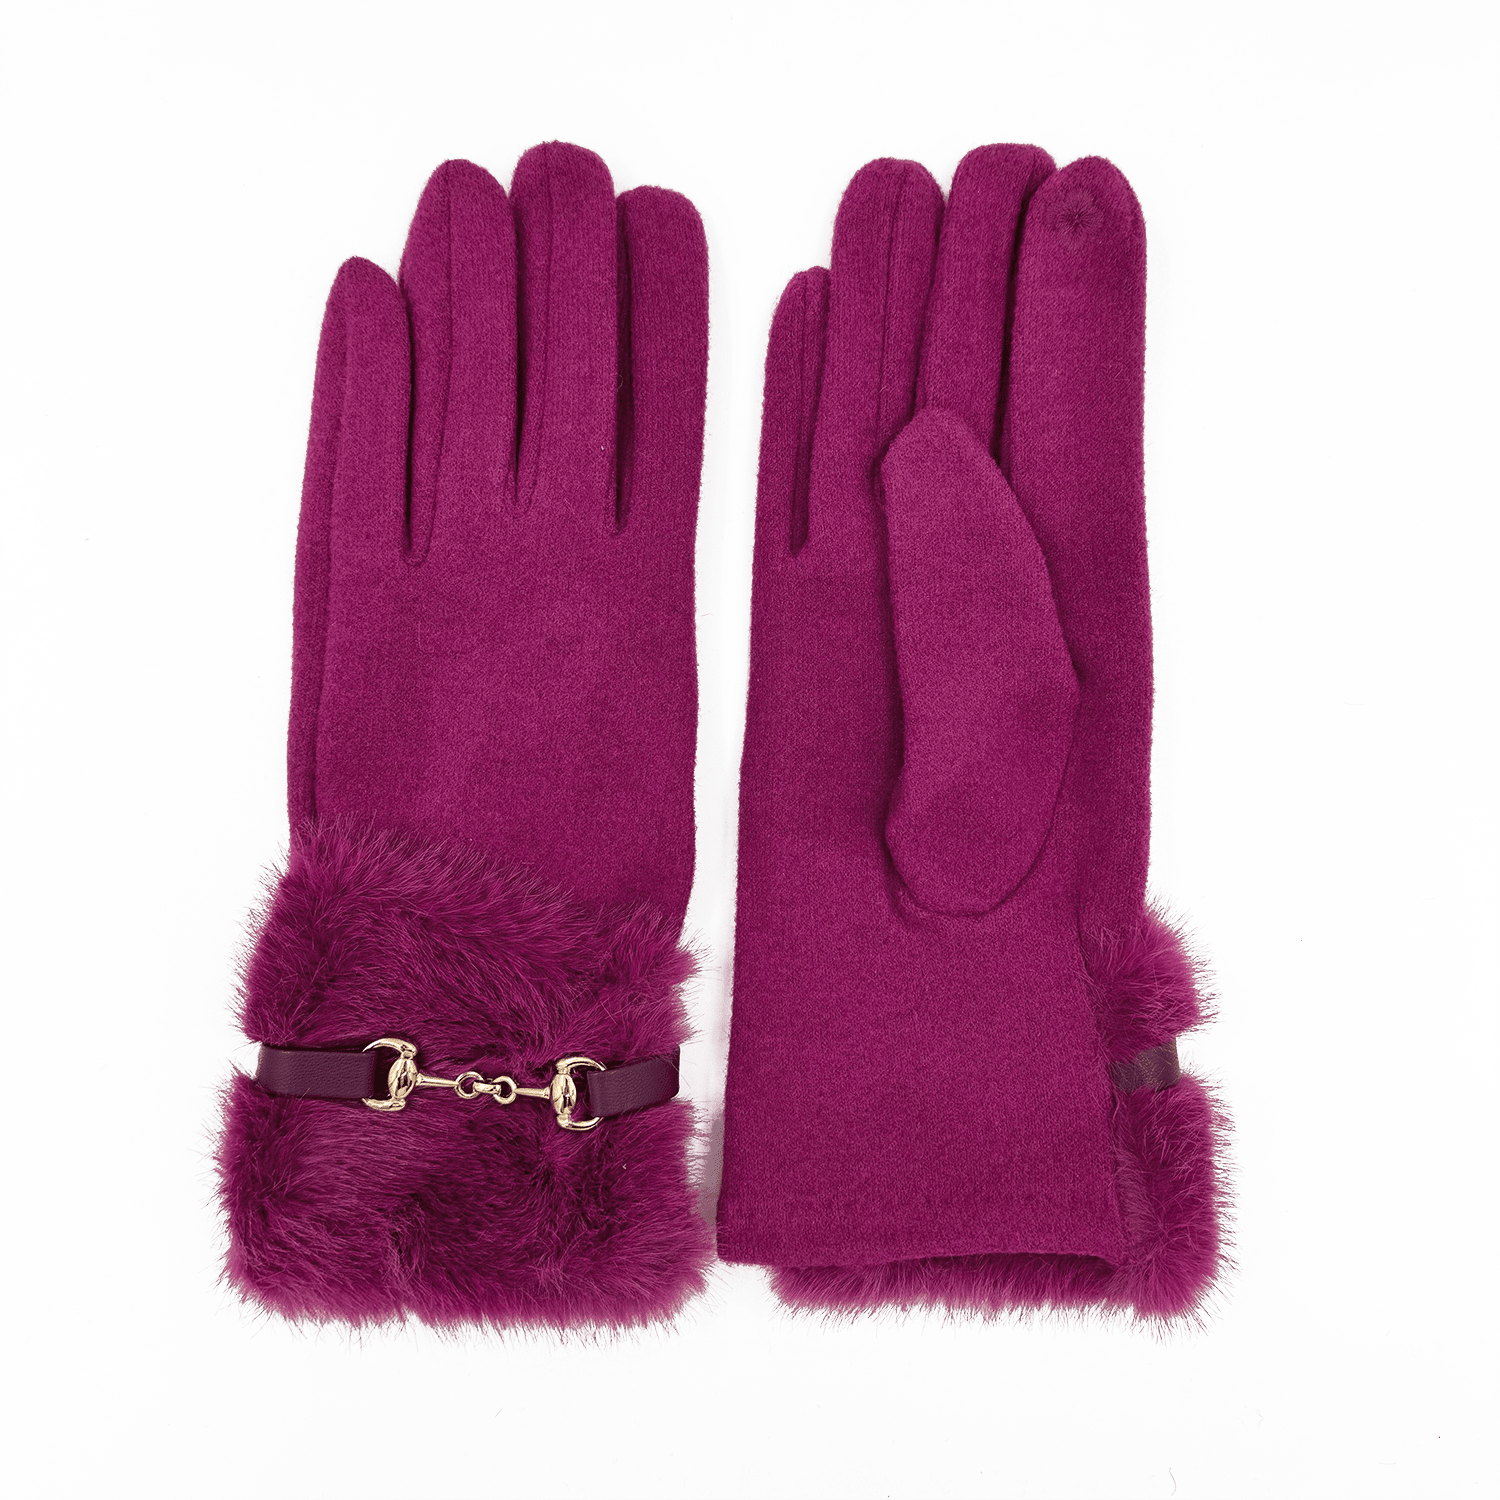  Diana & Co - Mănuși pentru femei - fucsie